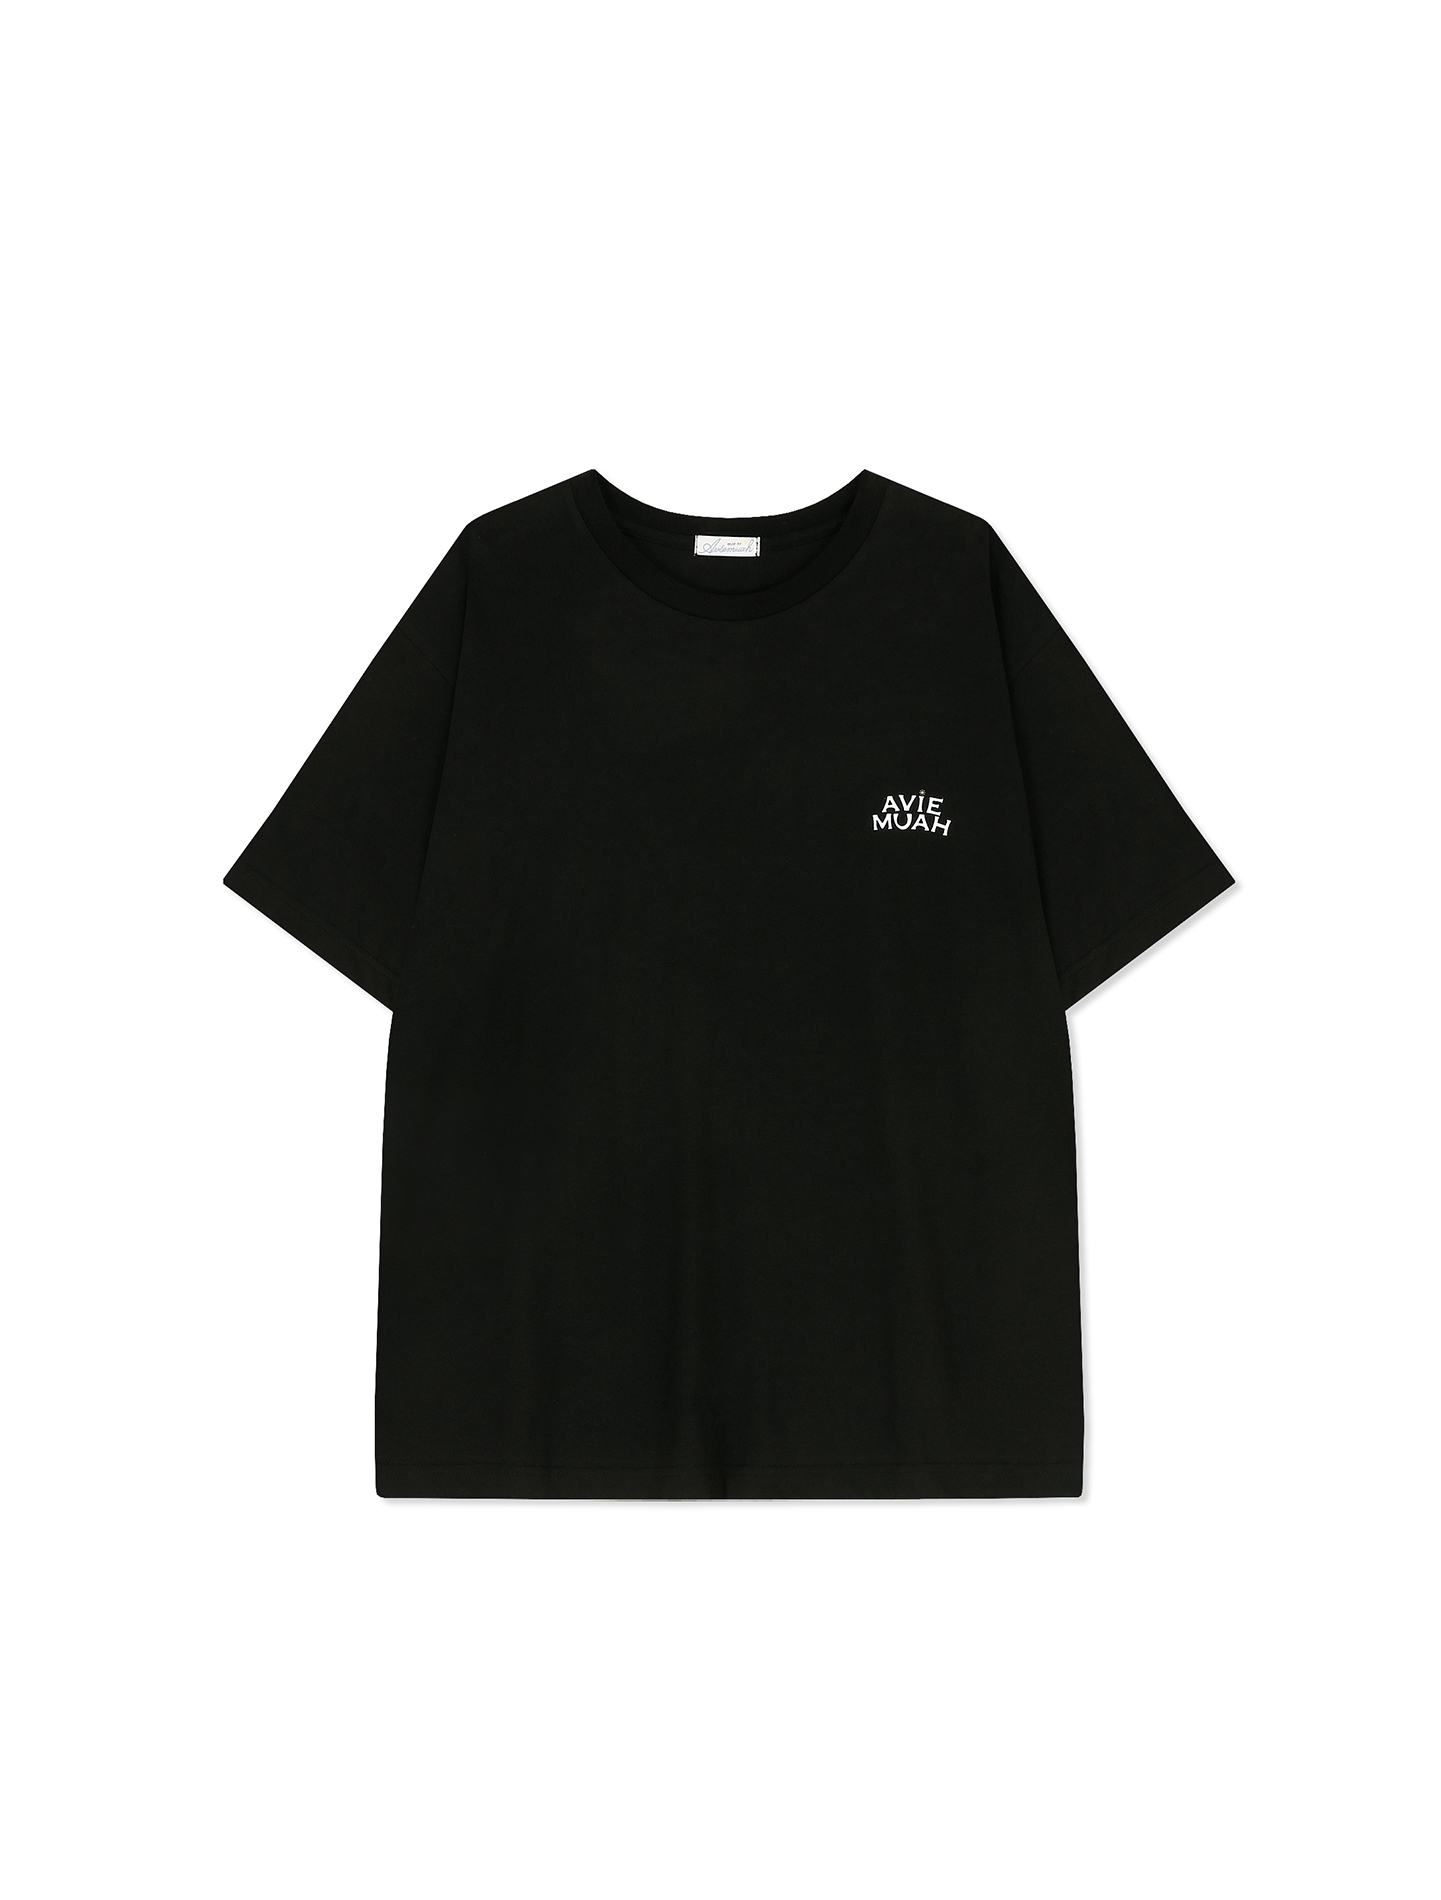 오버사이즈 로고 숏 슬리브 티셔츠 (블랙)